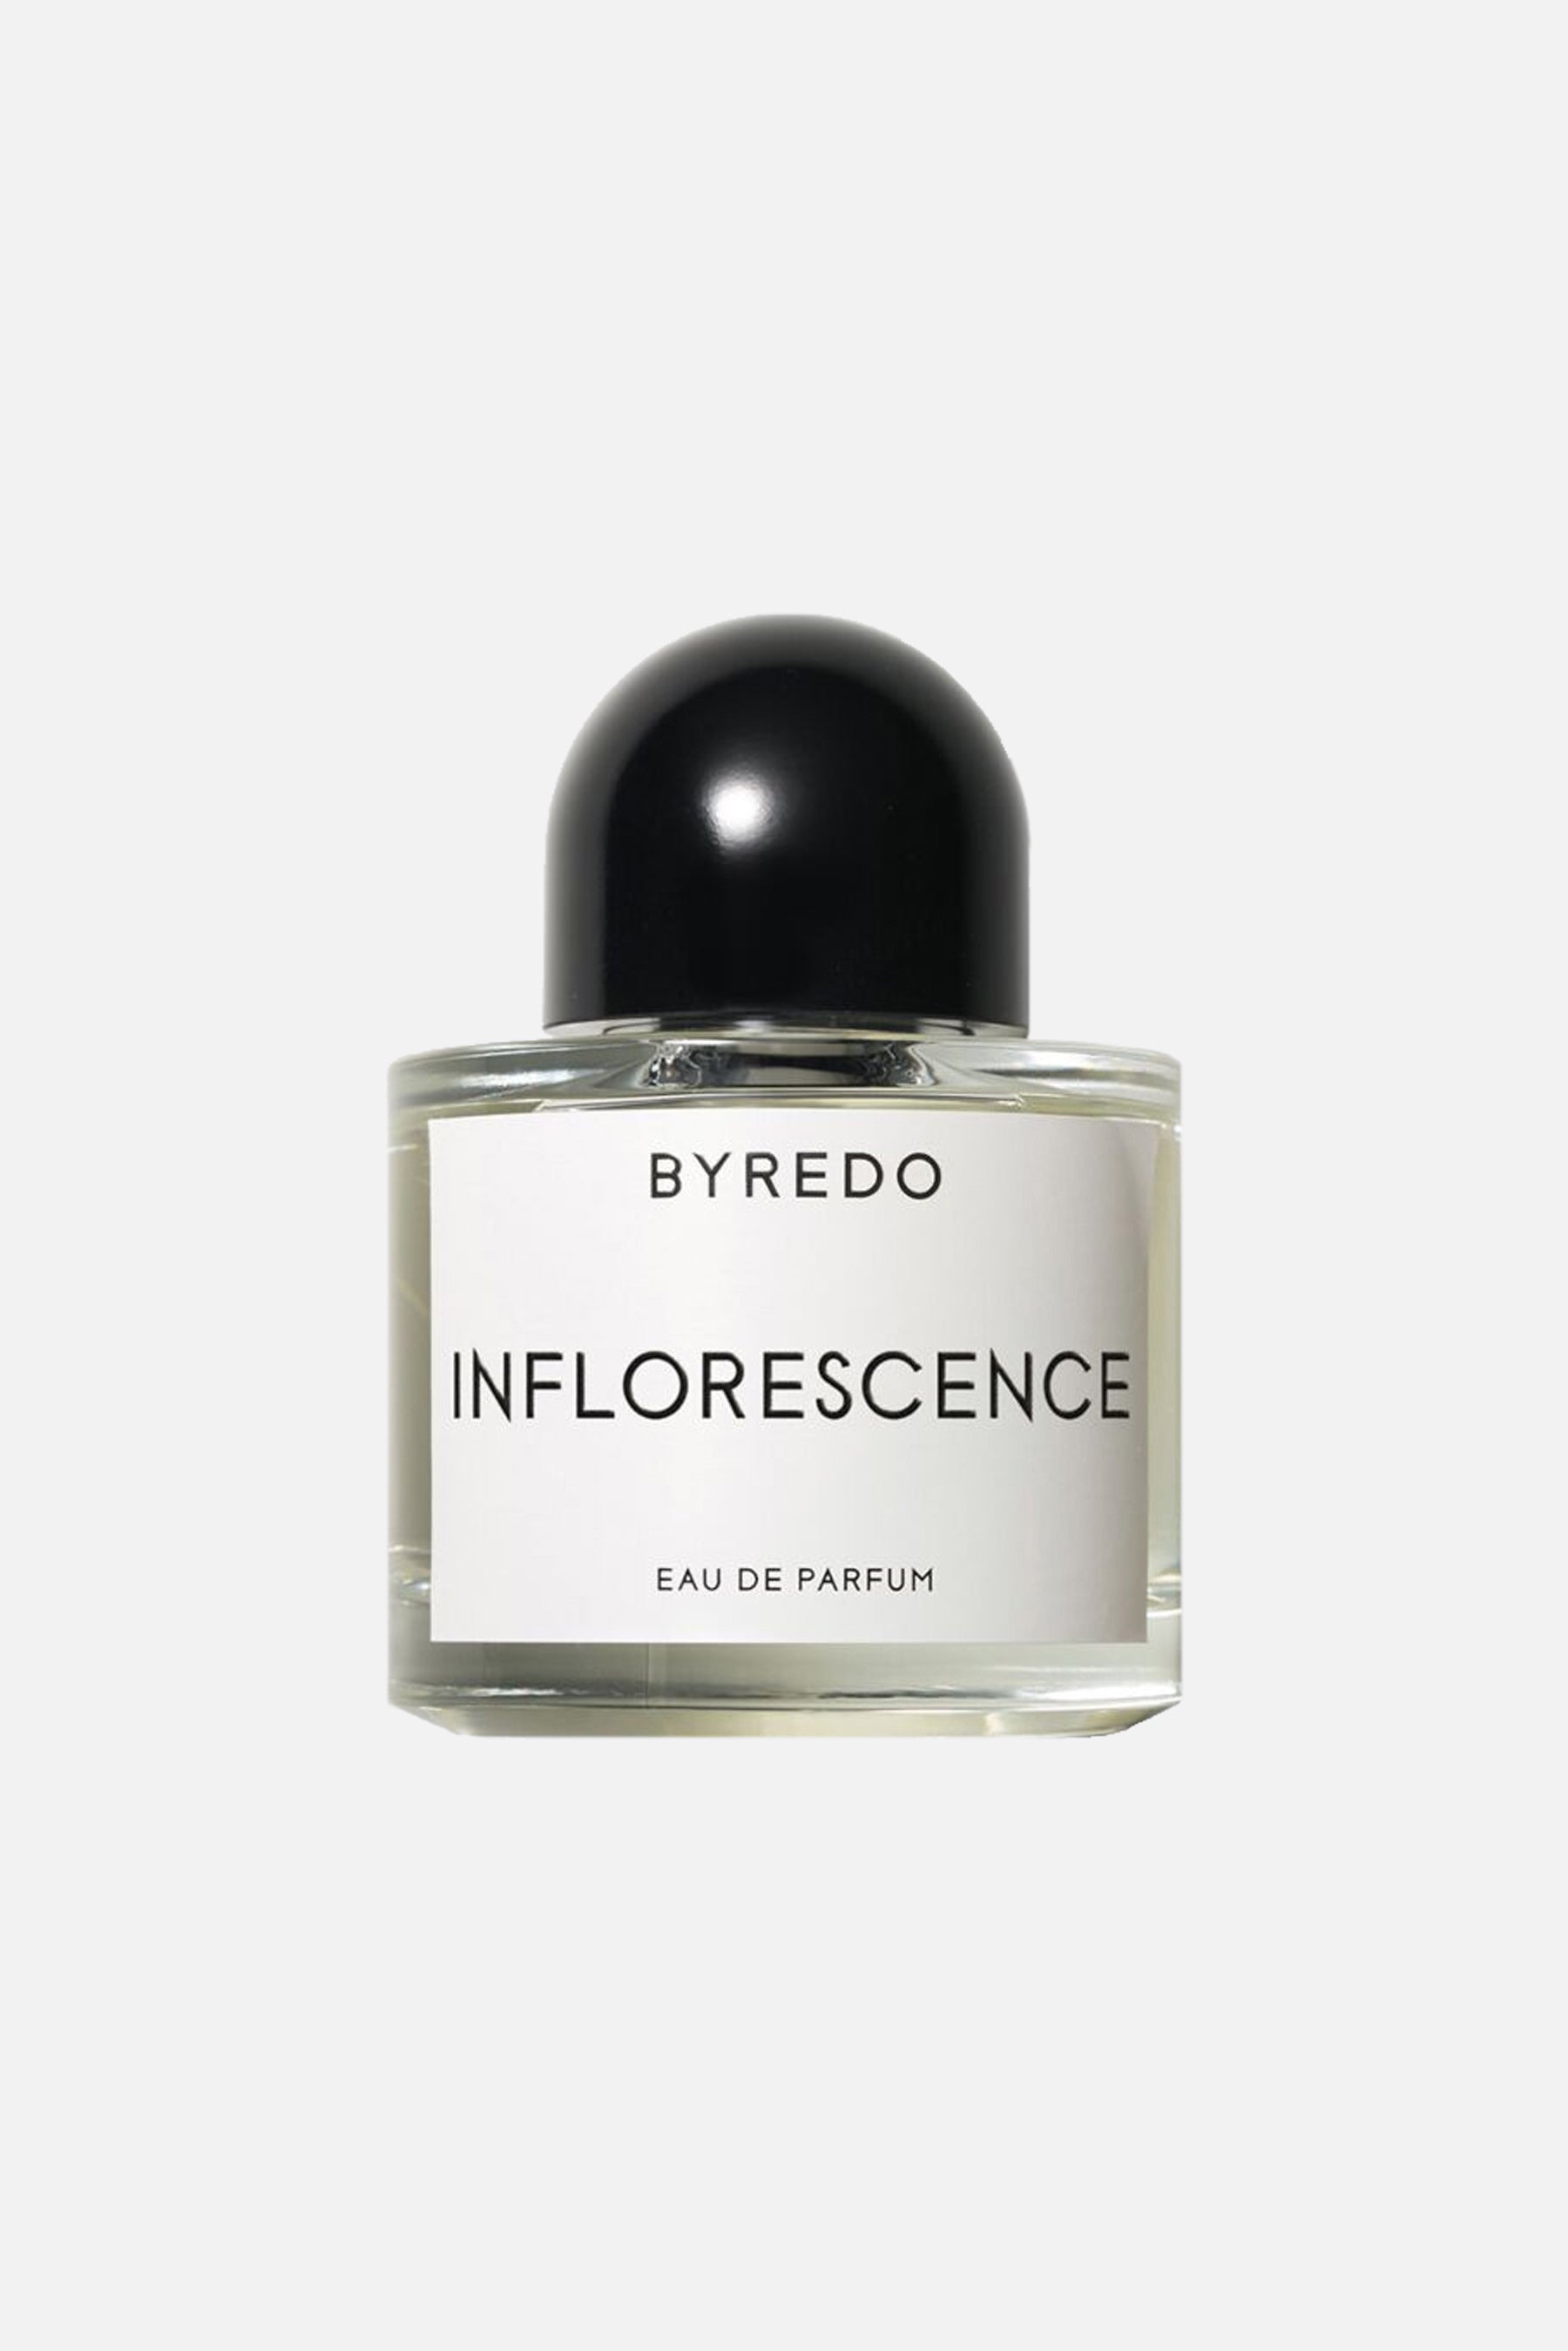 Inflorescence Eau de Parfum 50 ml